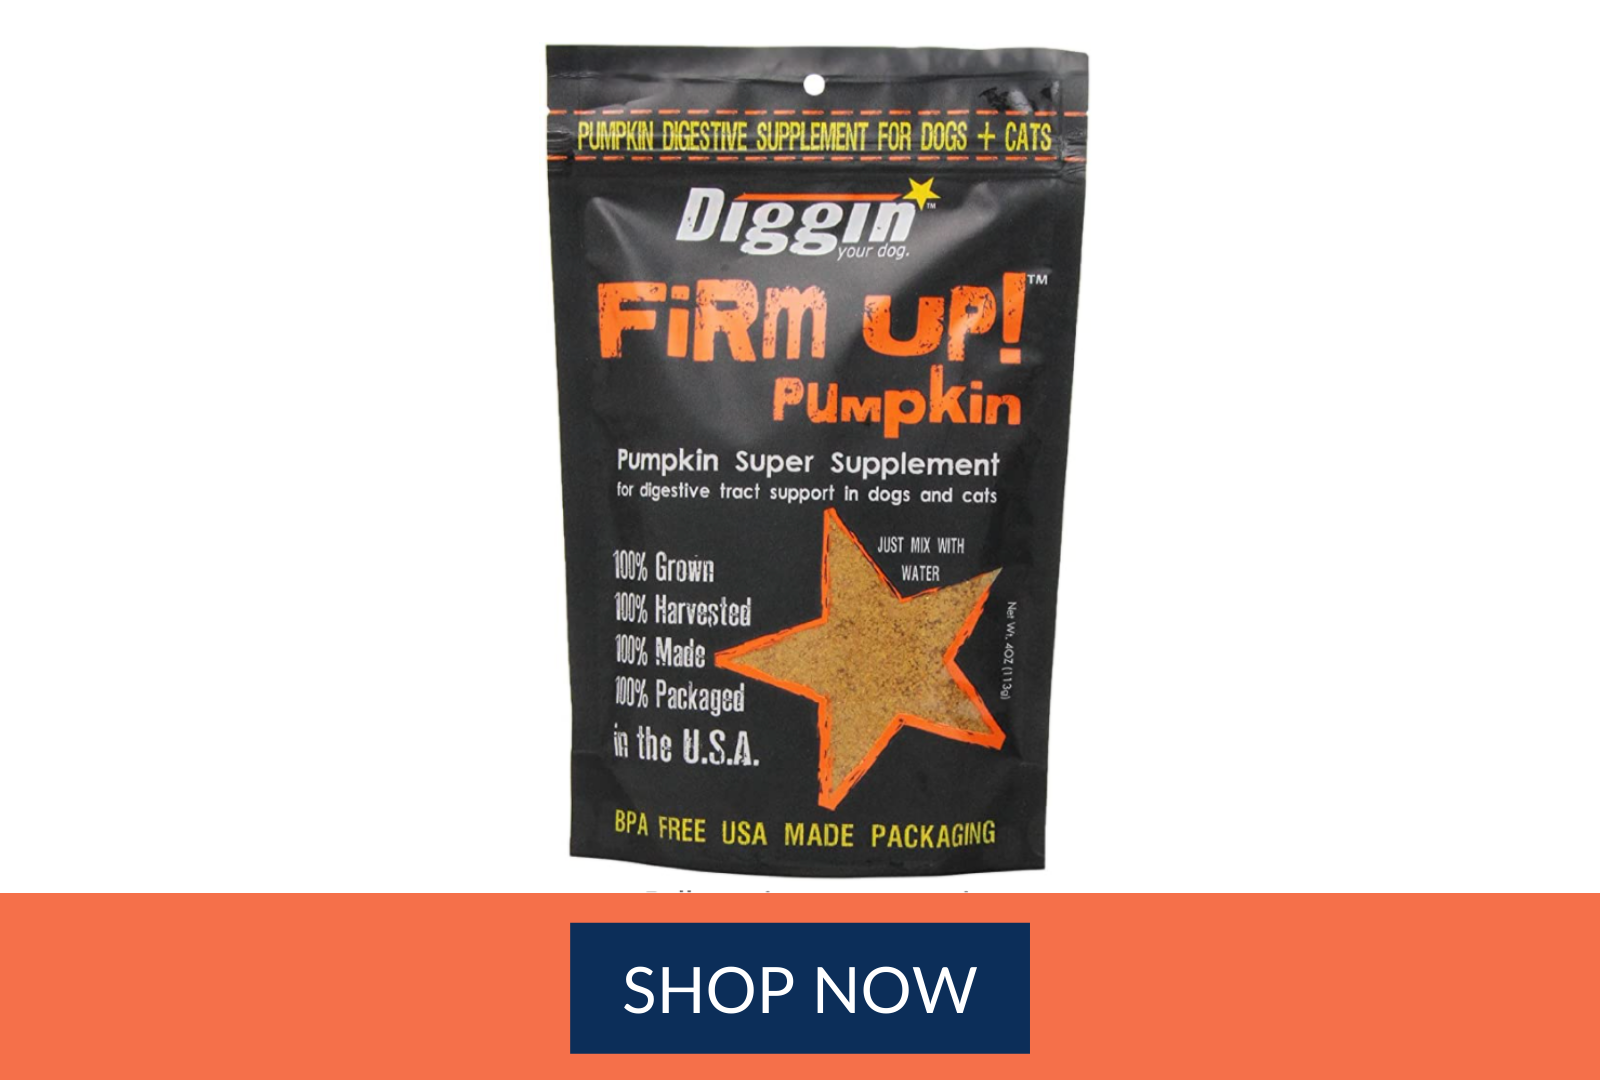 Diggin' Your Dog Firm Up Pumpkin Super Supplement